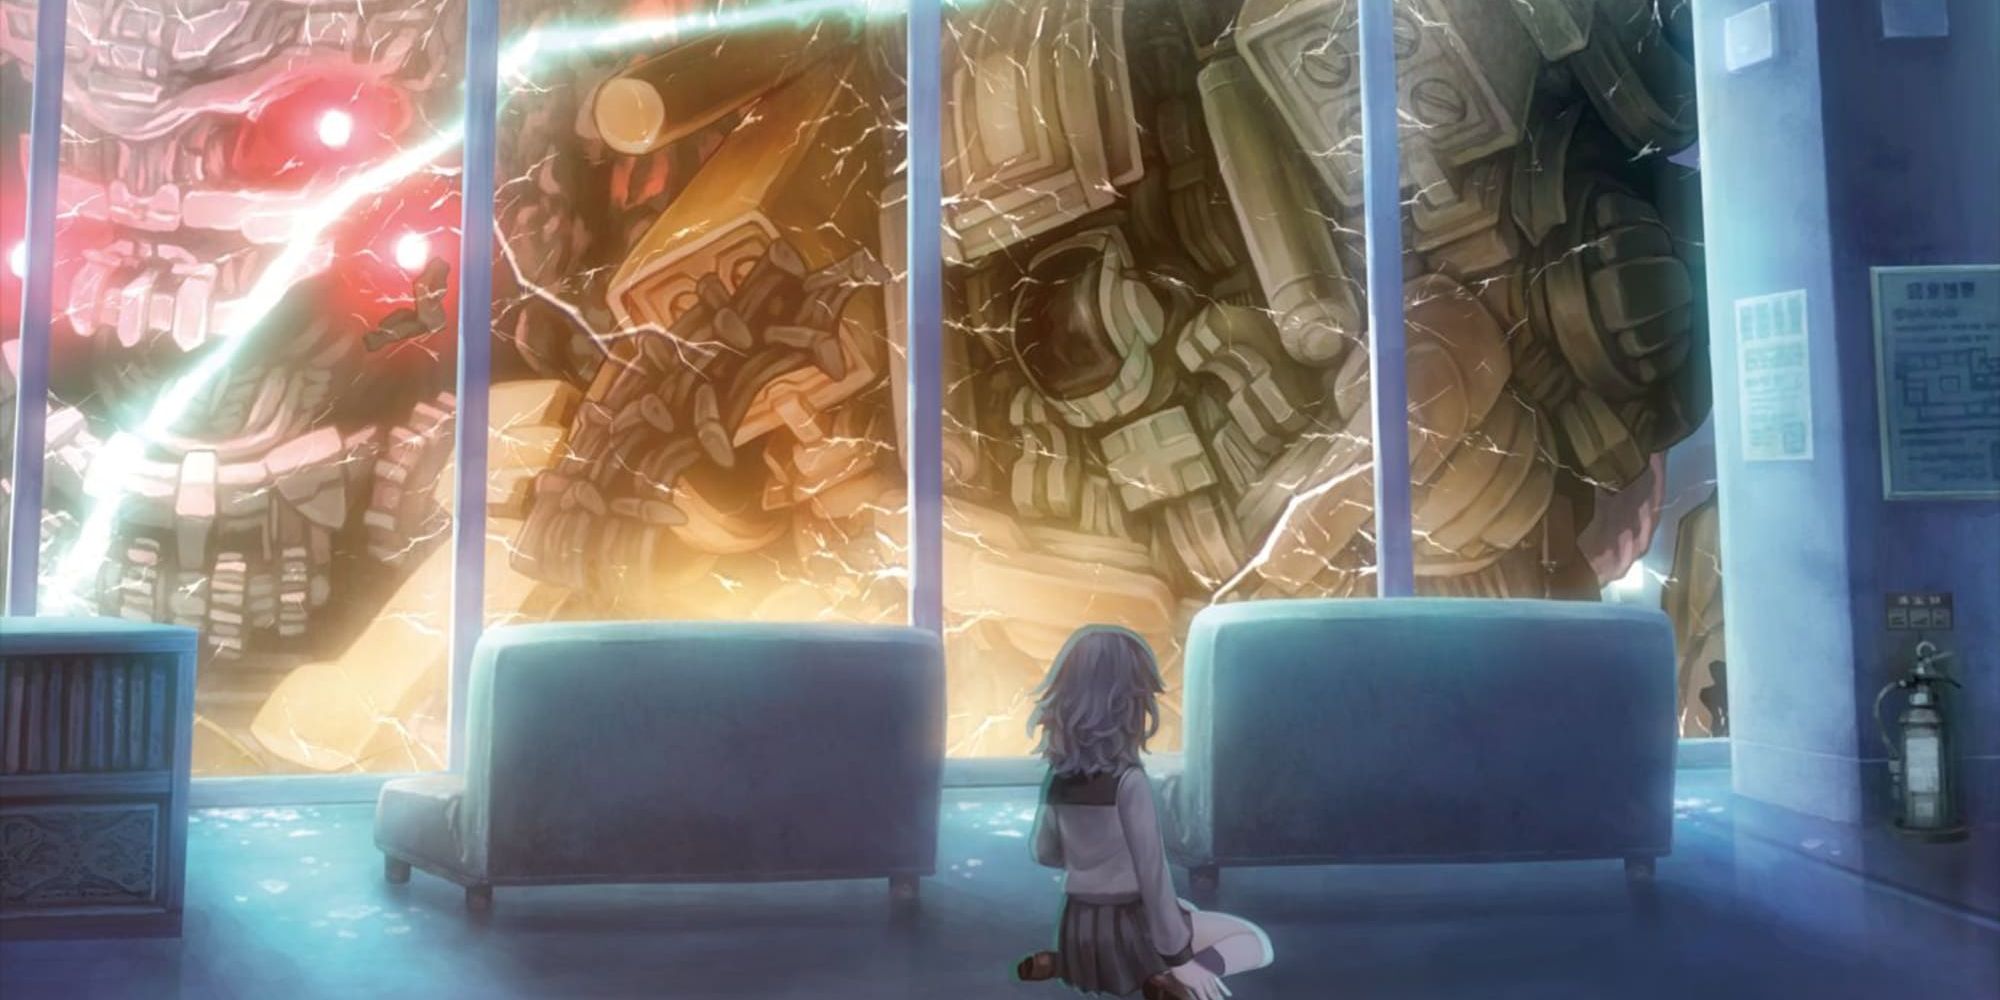 Ryoko Shinonome cowers from an invading Kaiju in 13 Sentinels: Aegis Rim